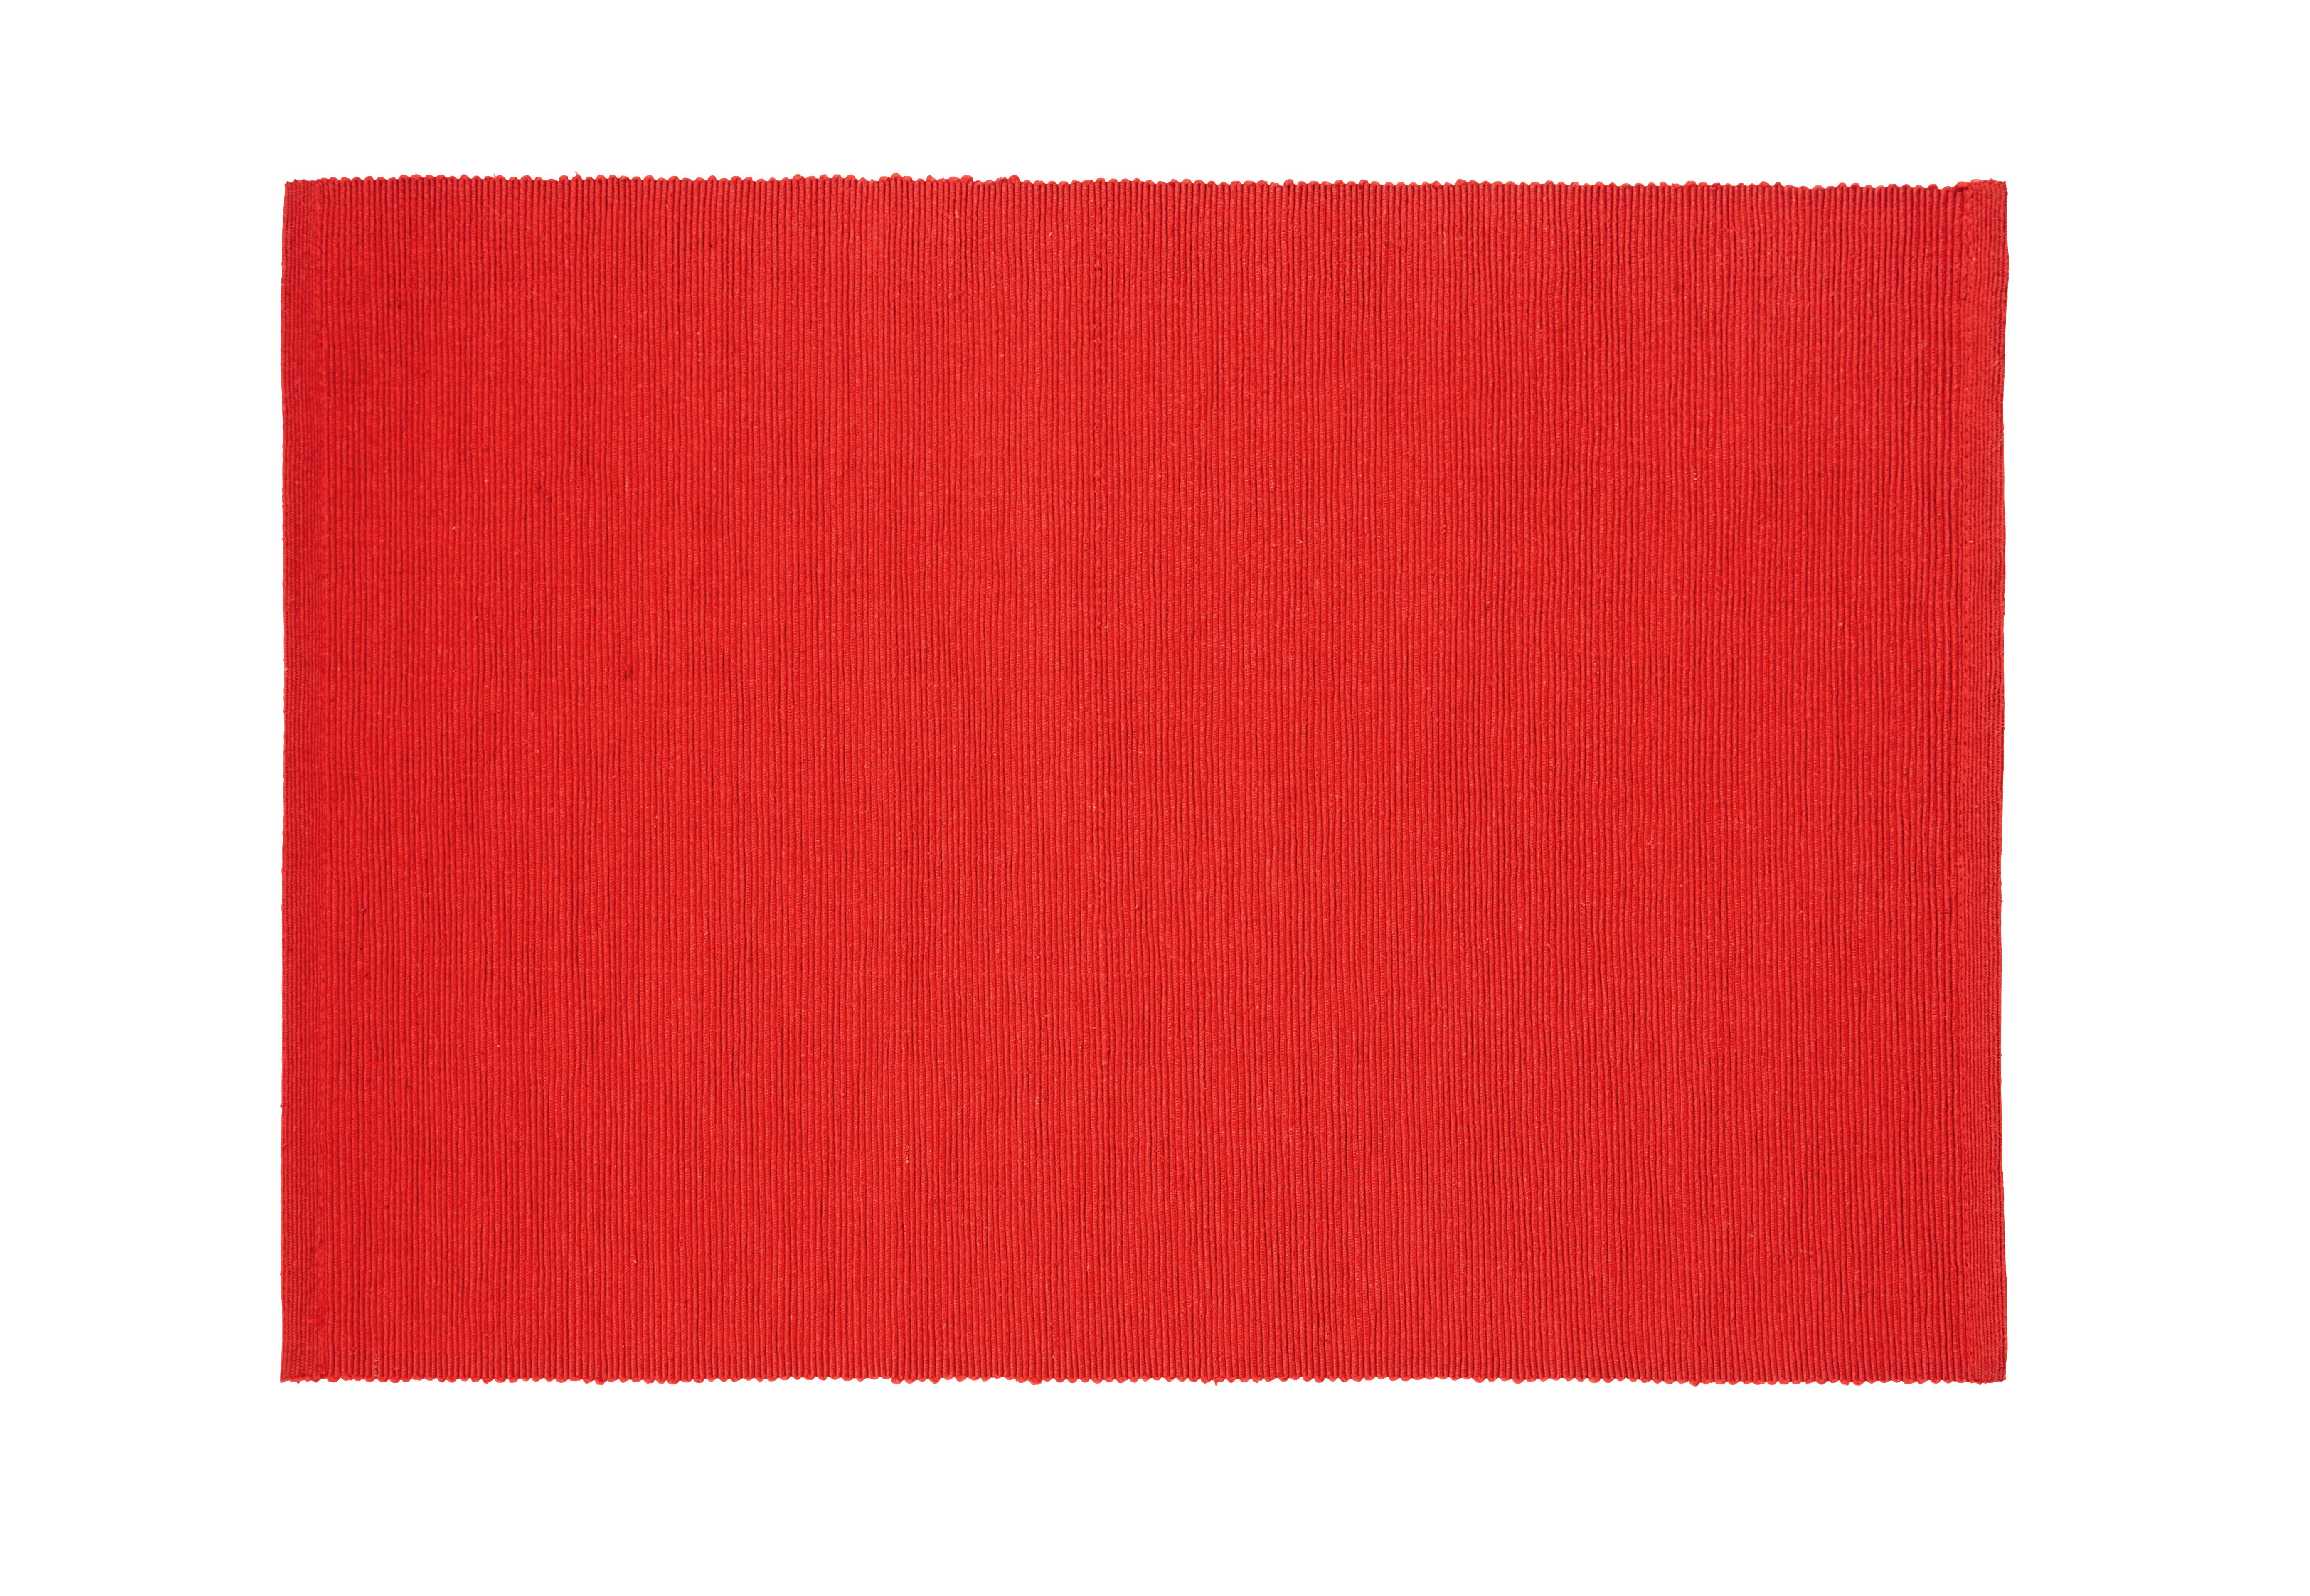 Prestieranie Maren, 33/45cm, Červená - červená, textil (33/45cm) - Based